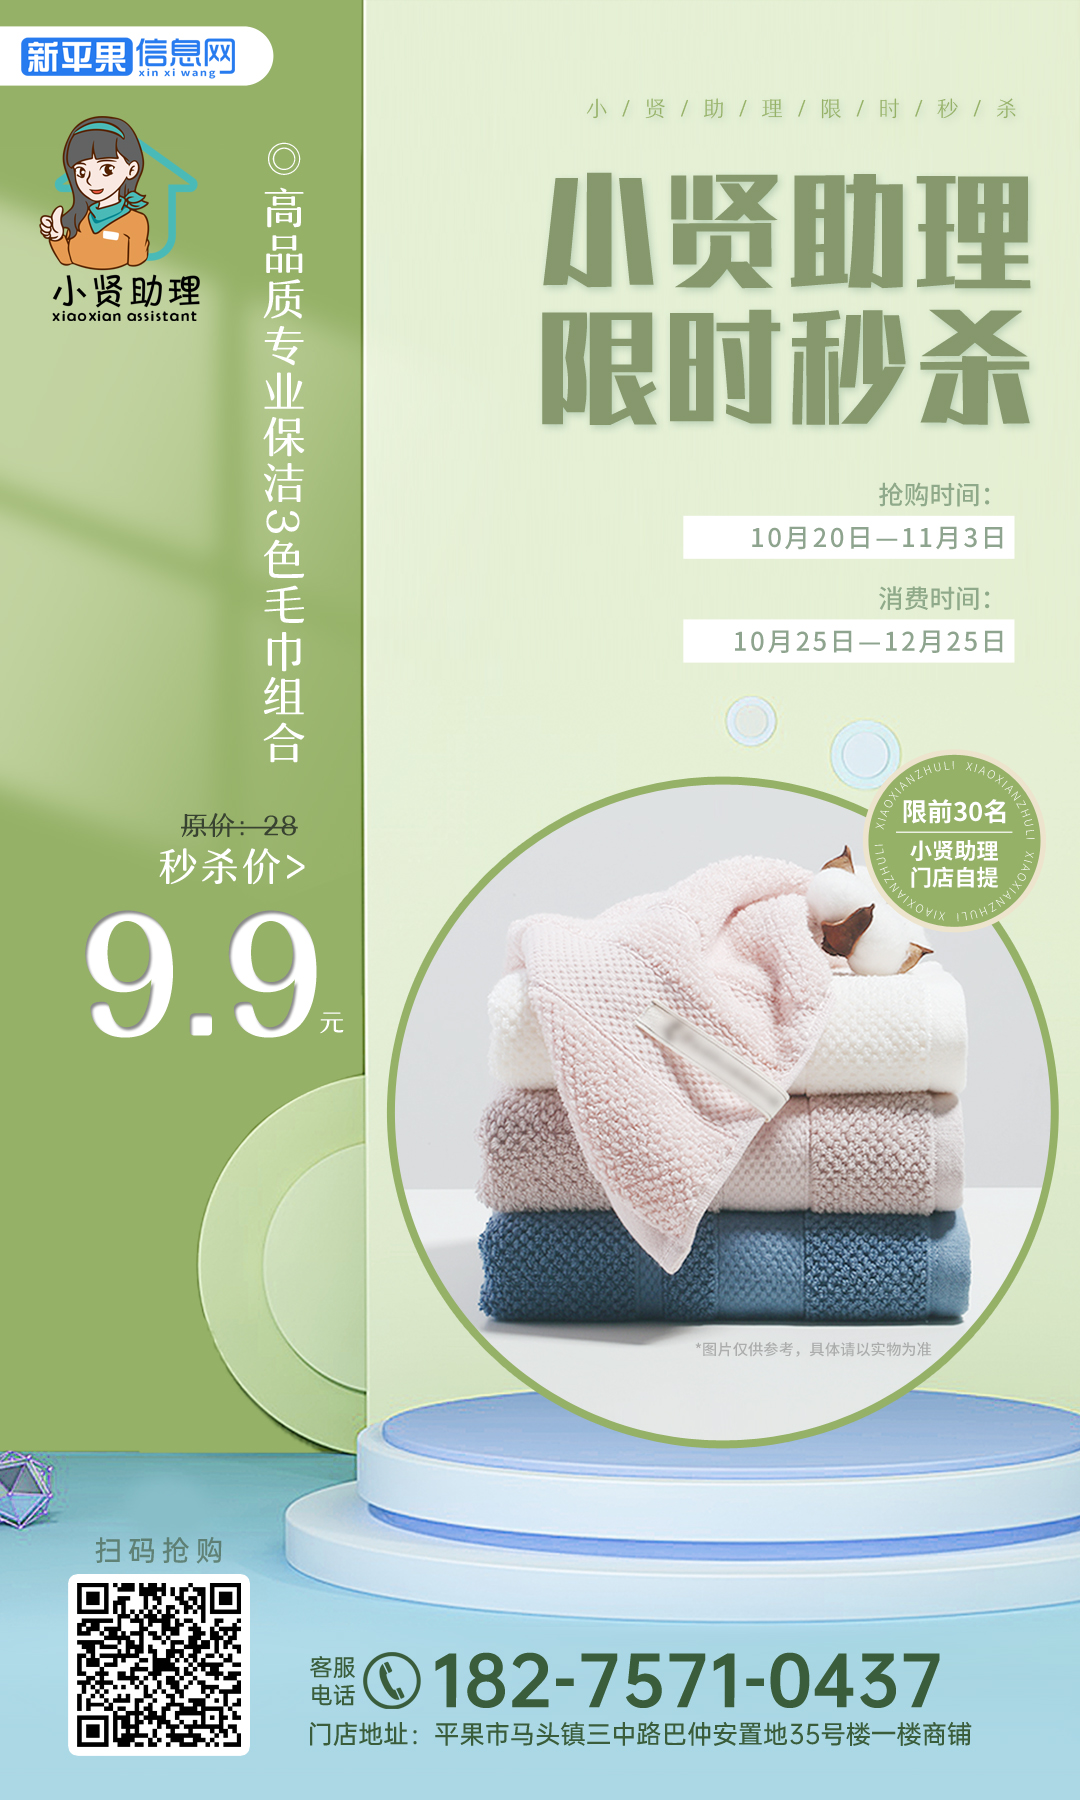 高品质专业保洁3色毛巾组合.jpg